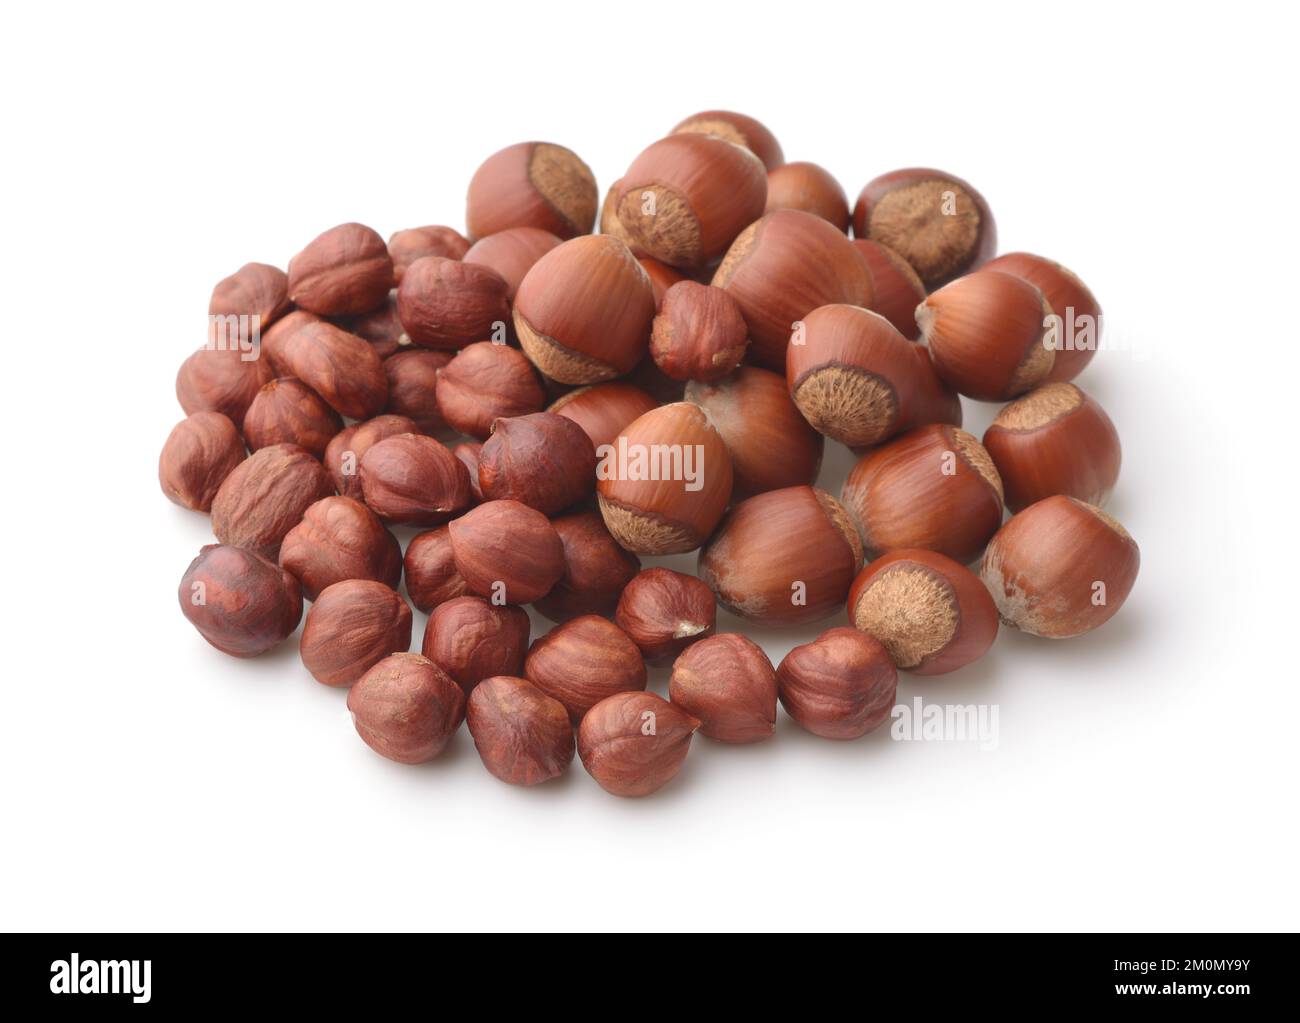 Pile of shelled and unshelled hazelnuts isolated on white Stock Photo